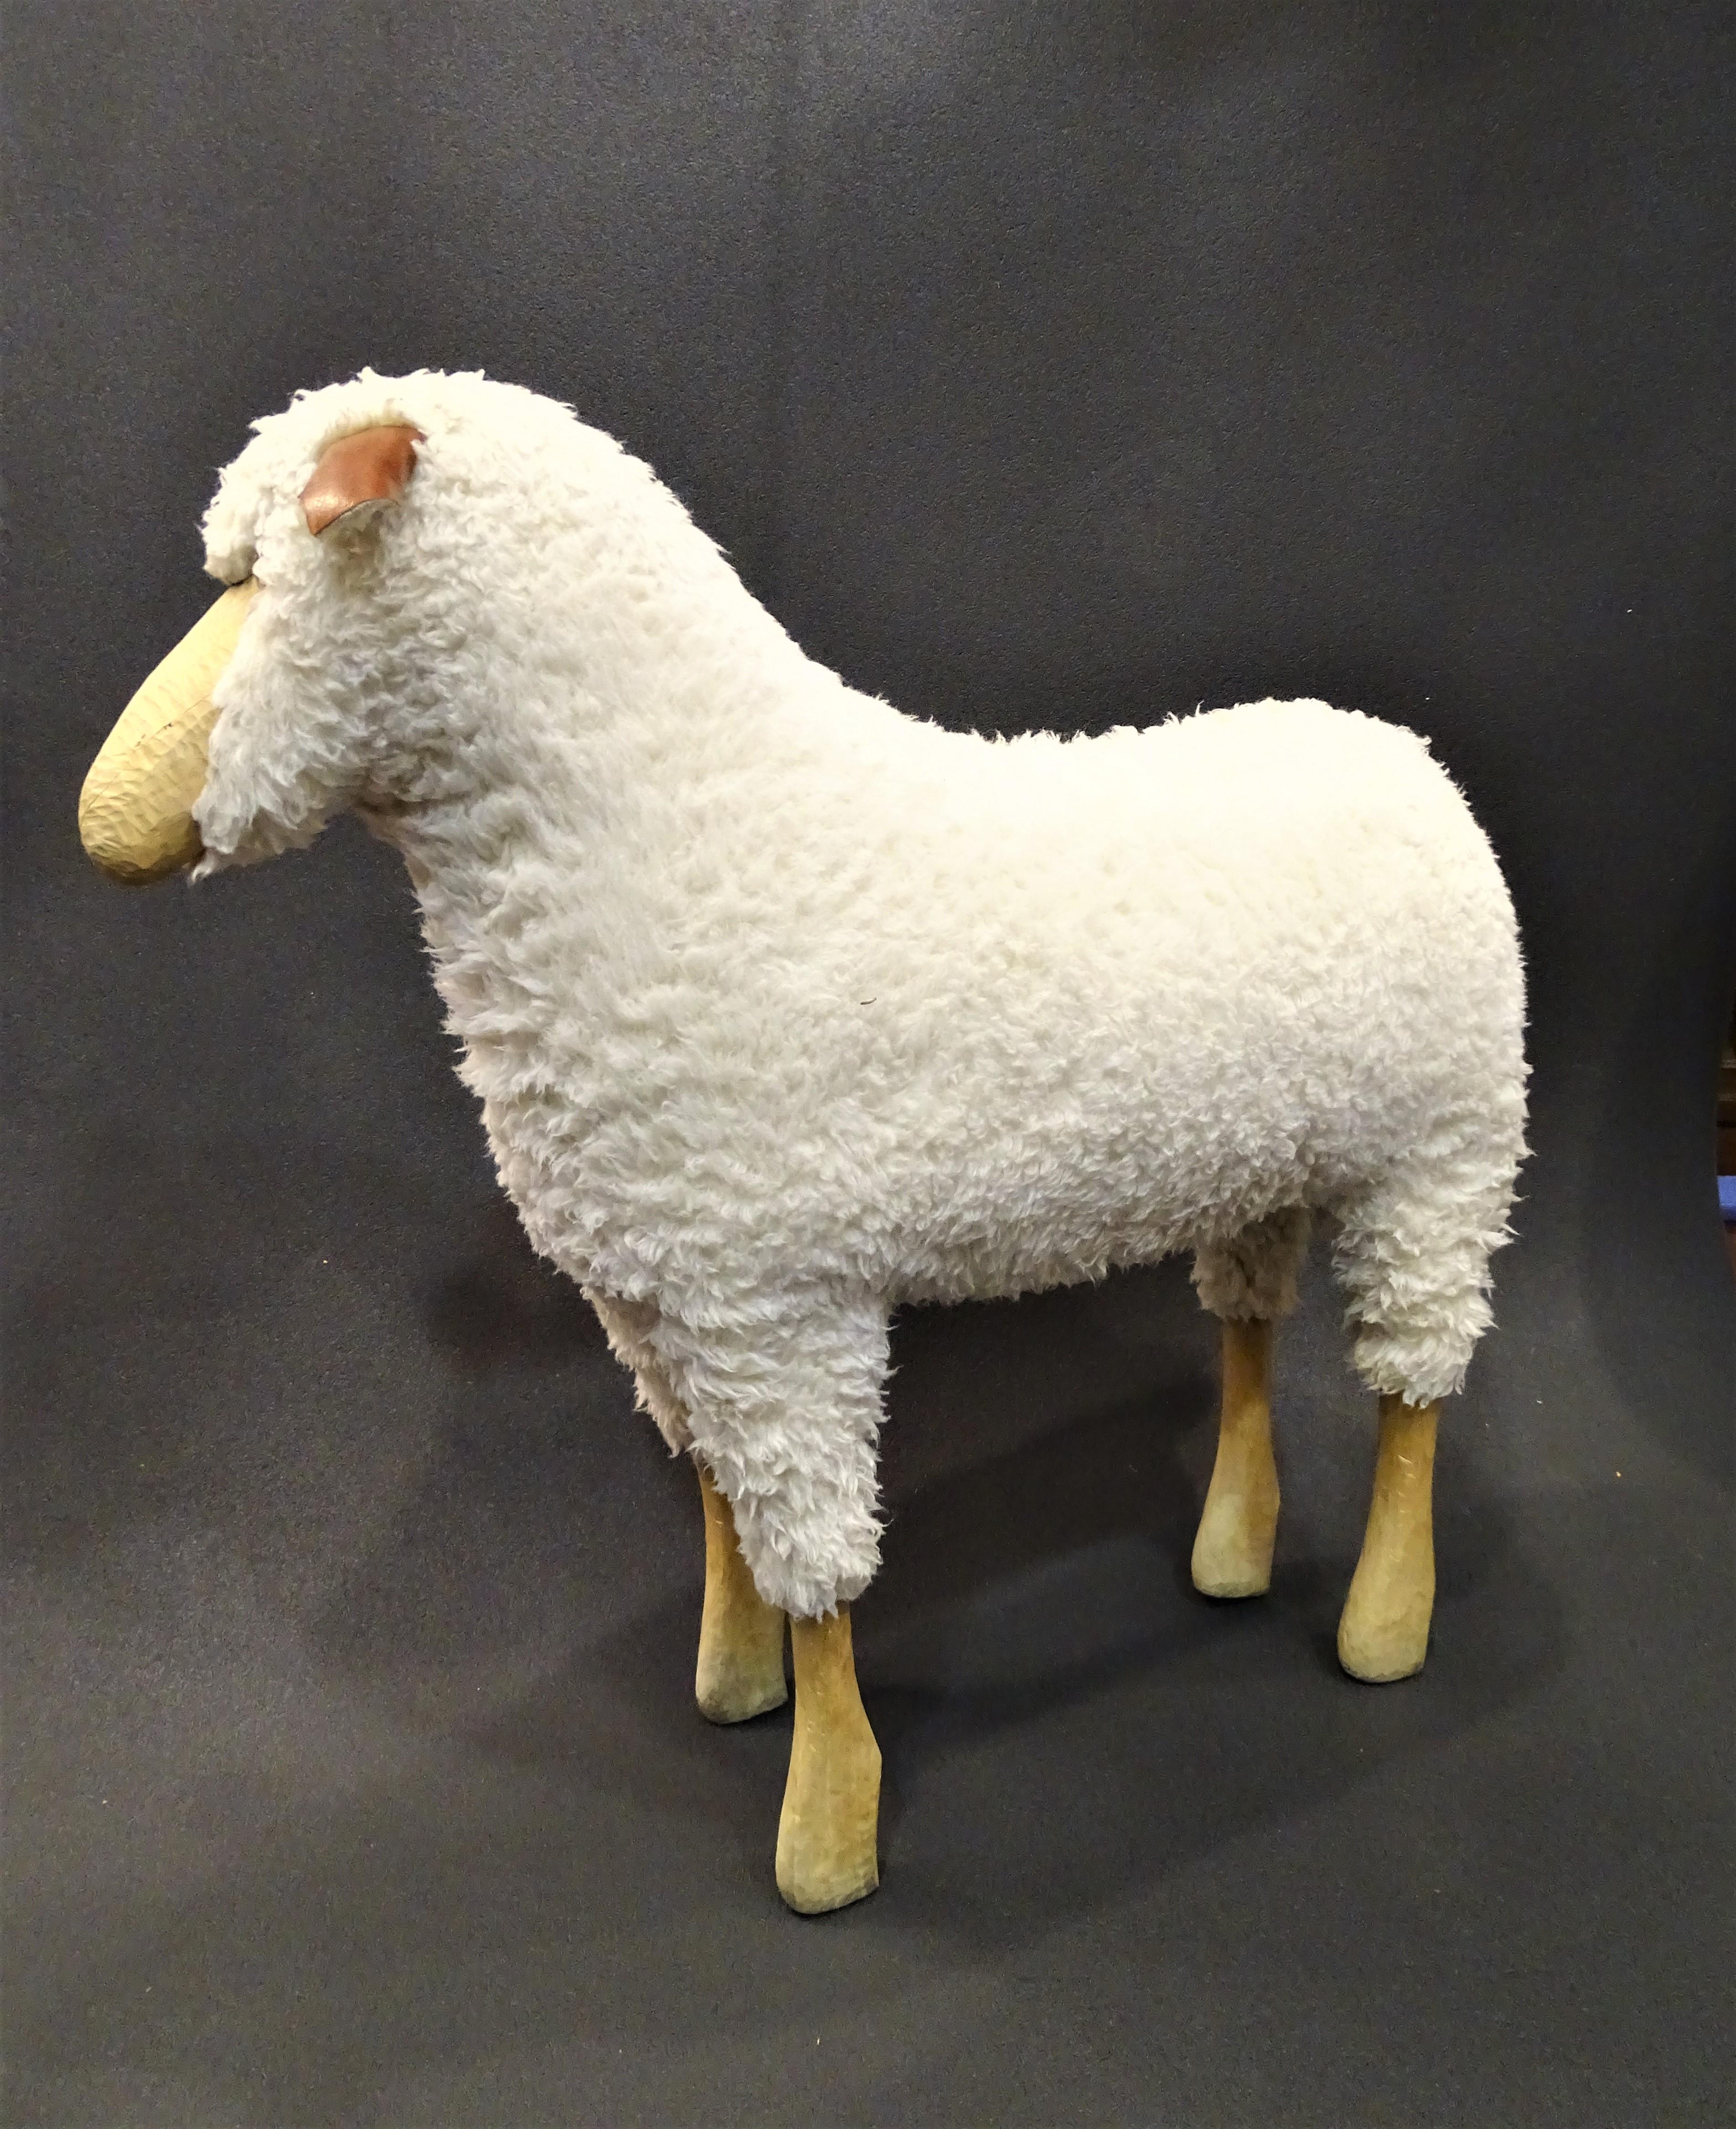 Wunderschöner großer Hocker Schaf von Hamms-Peter Krafft, original ,80er Jahre, in sehr gutem Zustand.
Wunderschönes Holzschaf mit echtem, weichem, flauschigem Schaffell, mit Beinen aus Buche, Ohren aus Leder, Fell aus Schaffell und Glasaugen. Die